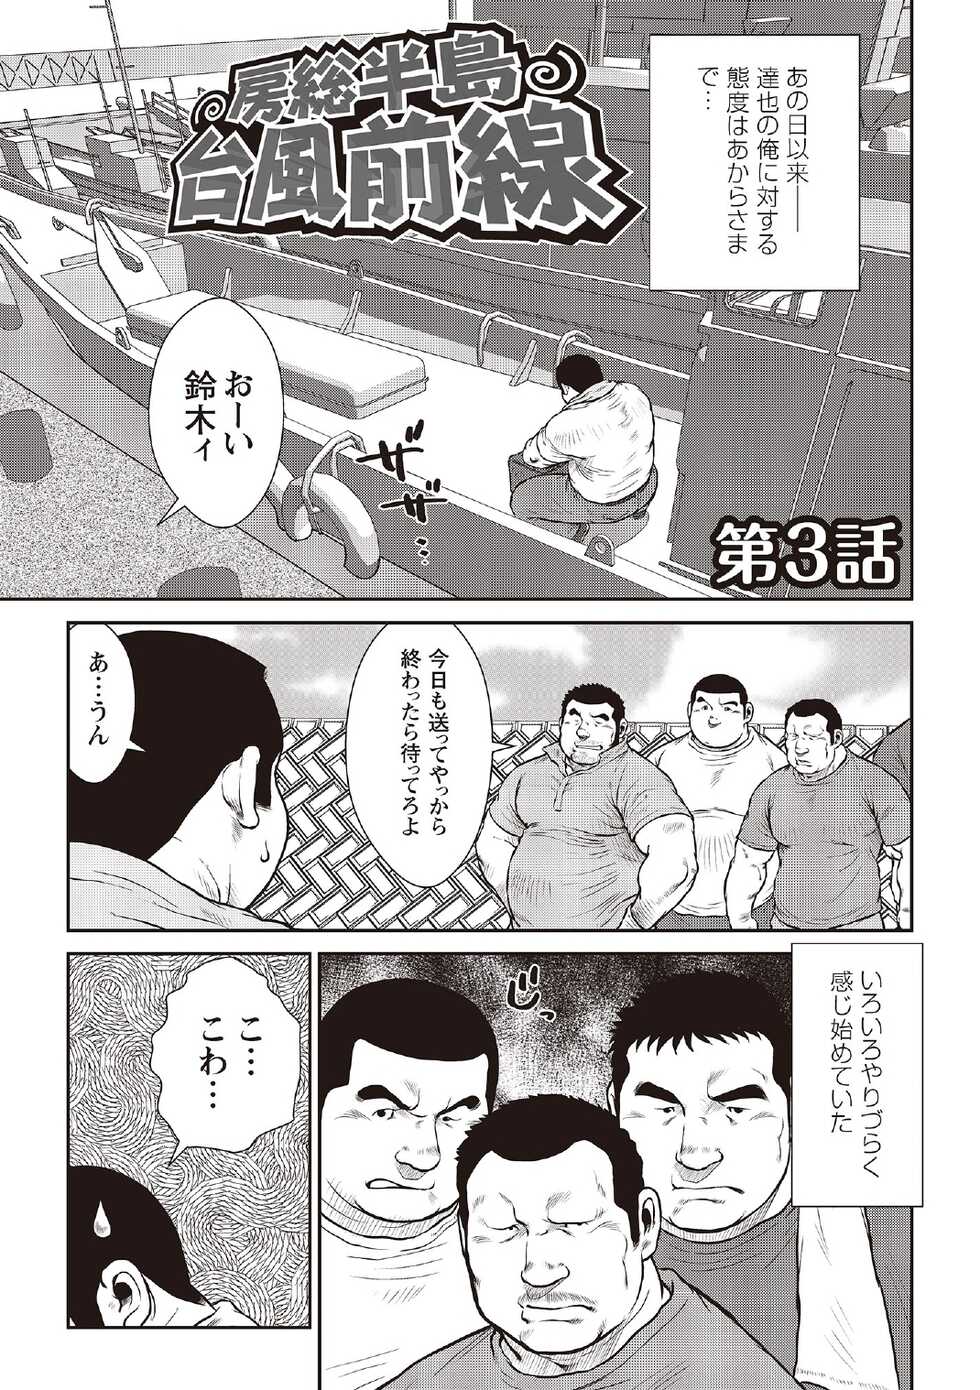 [Ebisubashi Seizou] Ebisubashi Seizou Tanpen Manga Shuu 2 Fuuun! Danshi Ryou [Bunsatsuban] PART 3 Bousou Hantou Taifuu Zensen Ch. 3 ~ Ch. 5 [Digital] - Page 3